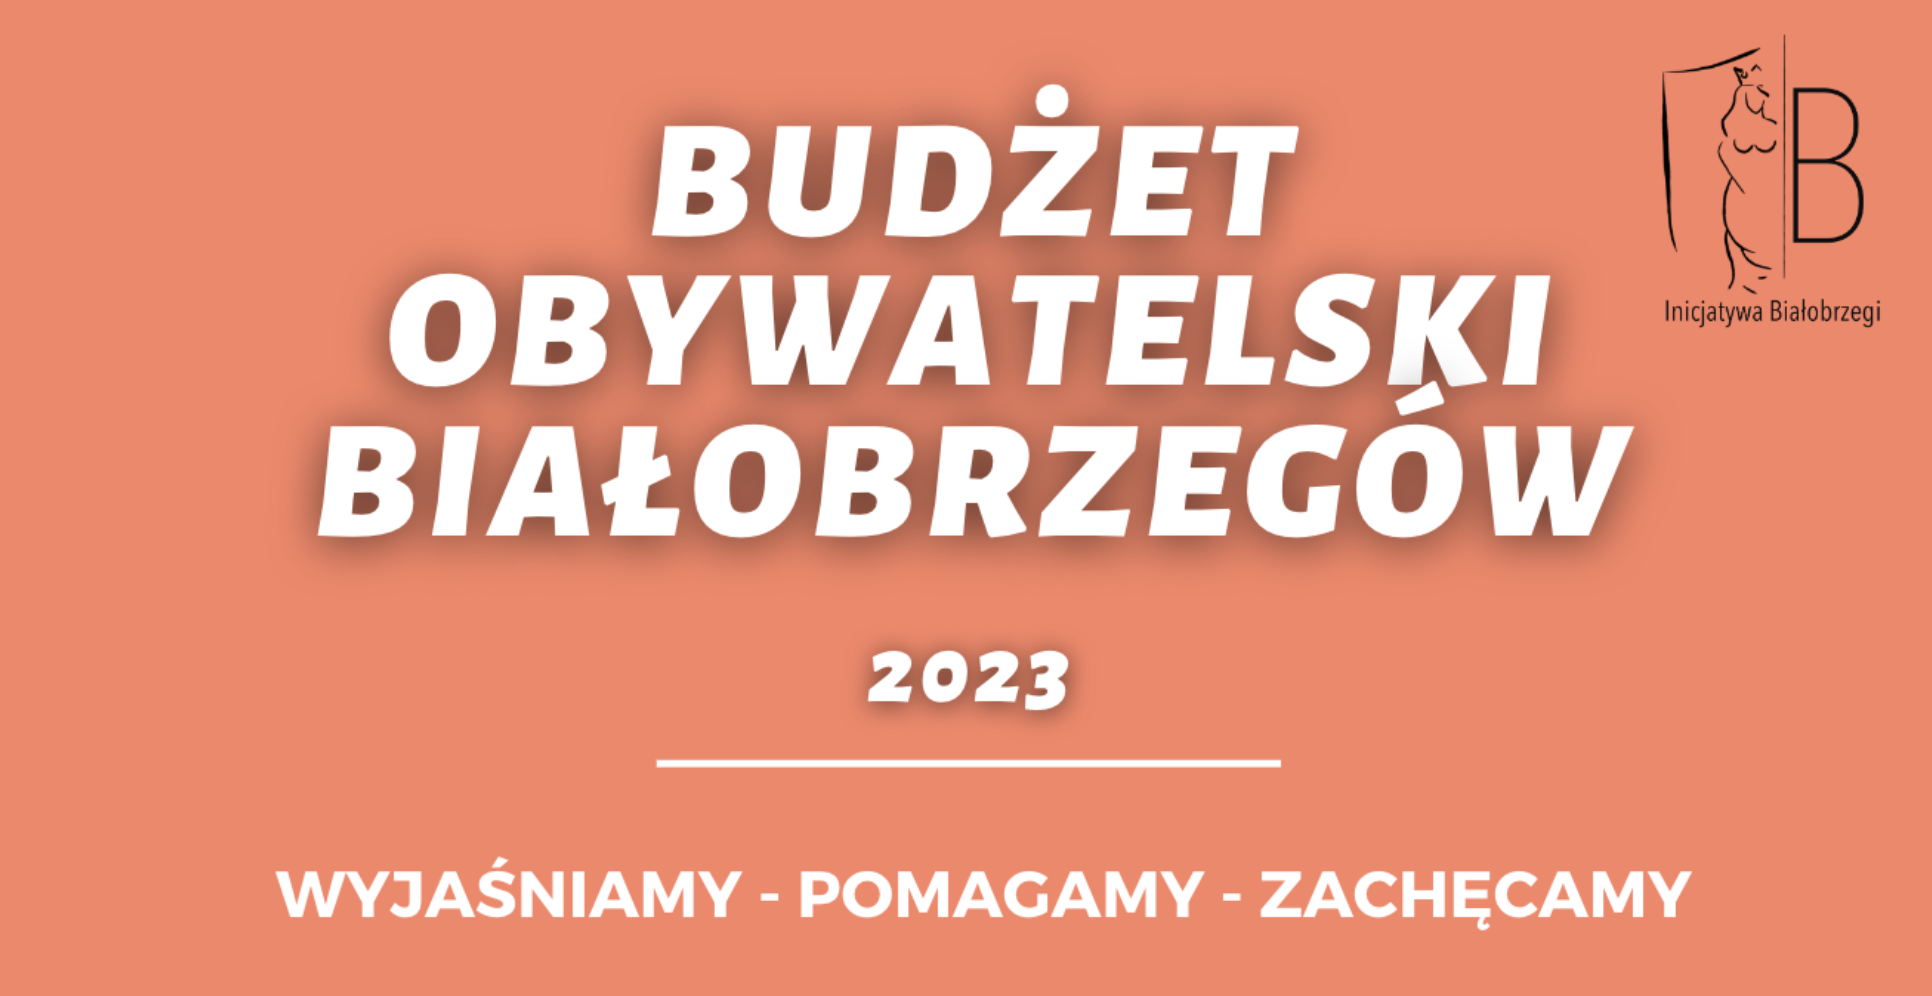 Budżet obywatelski Białobrzegów